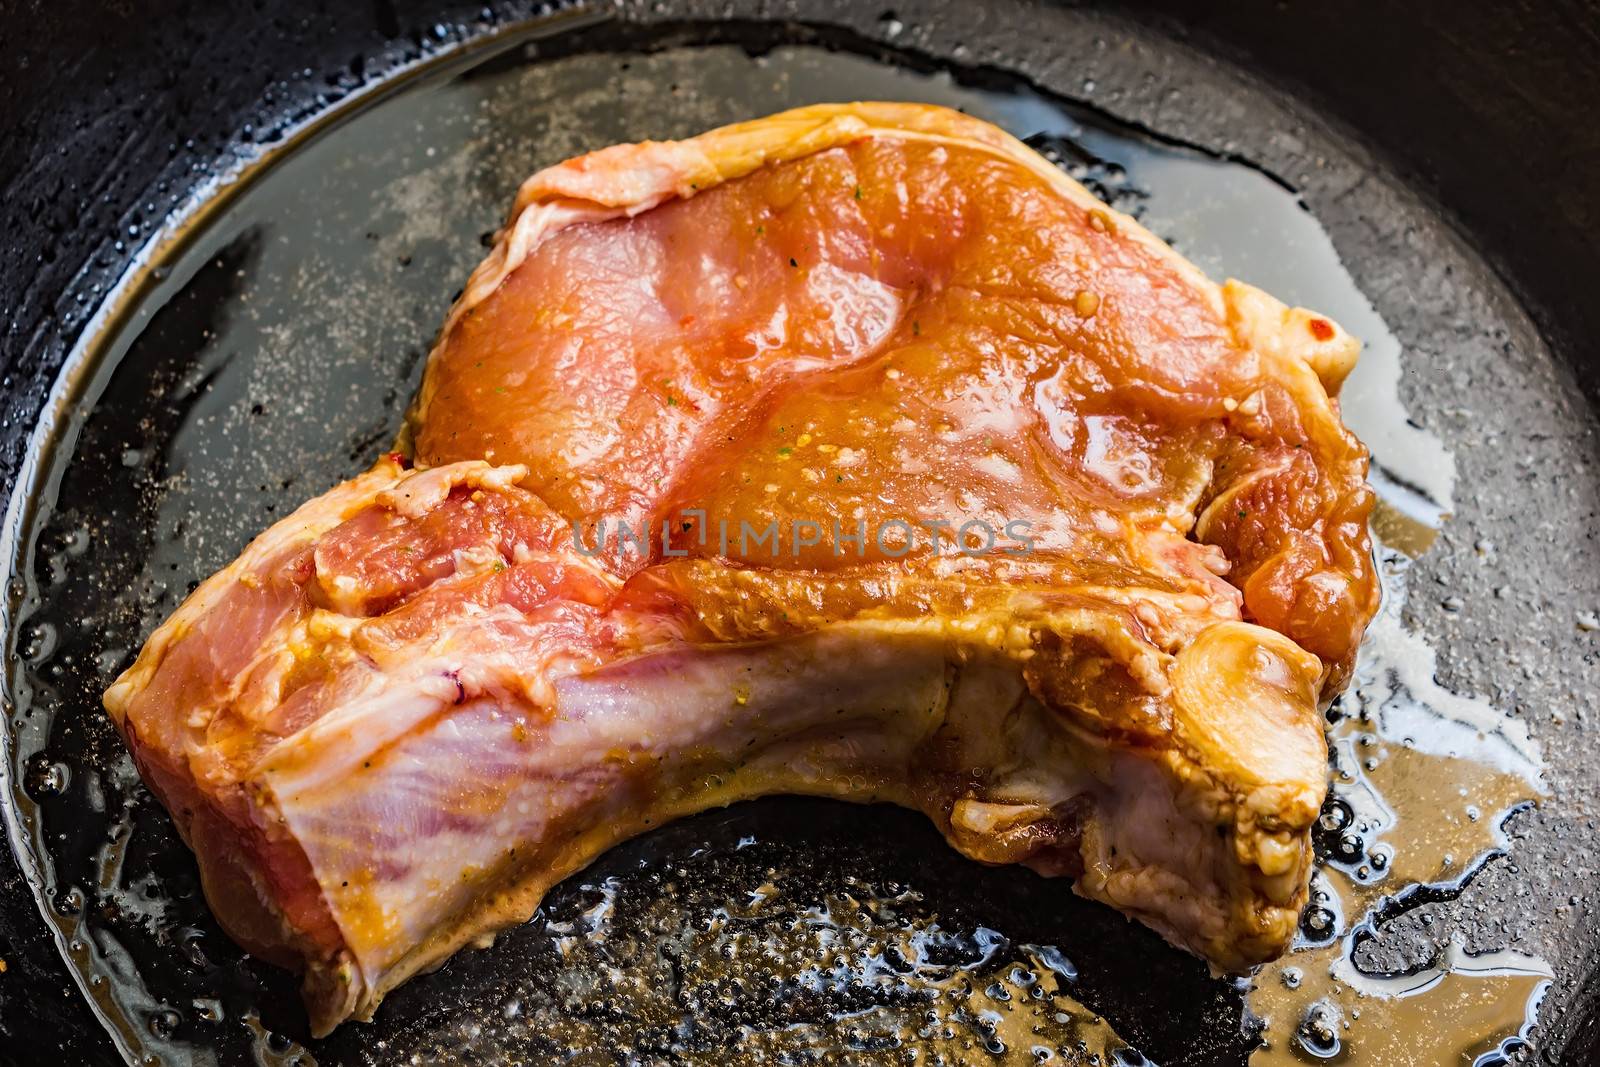 Roasted pork steak by oleg_zhukov